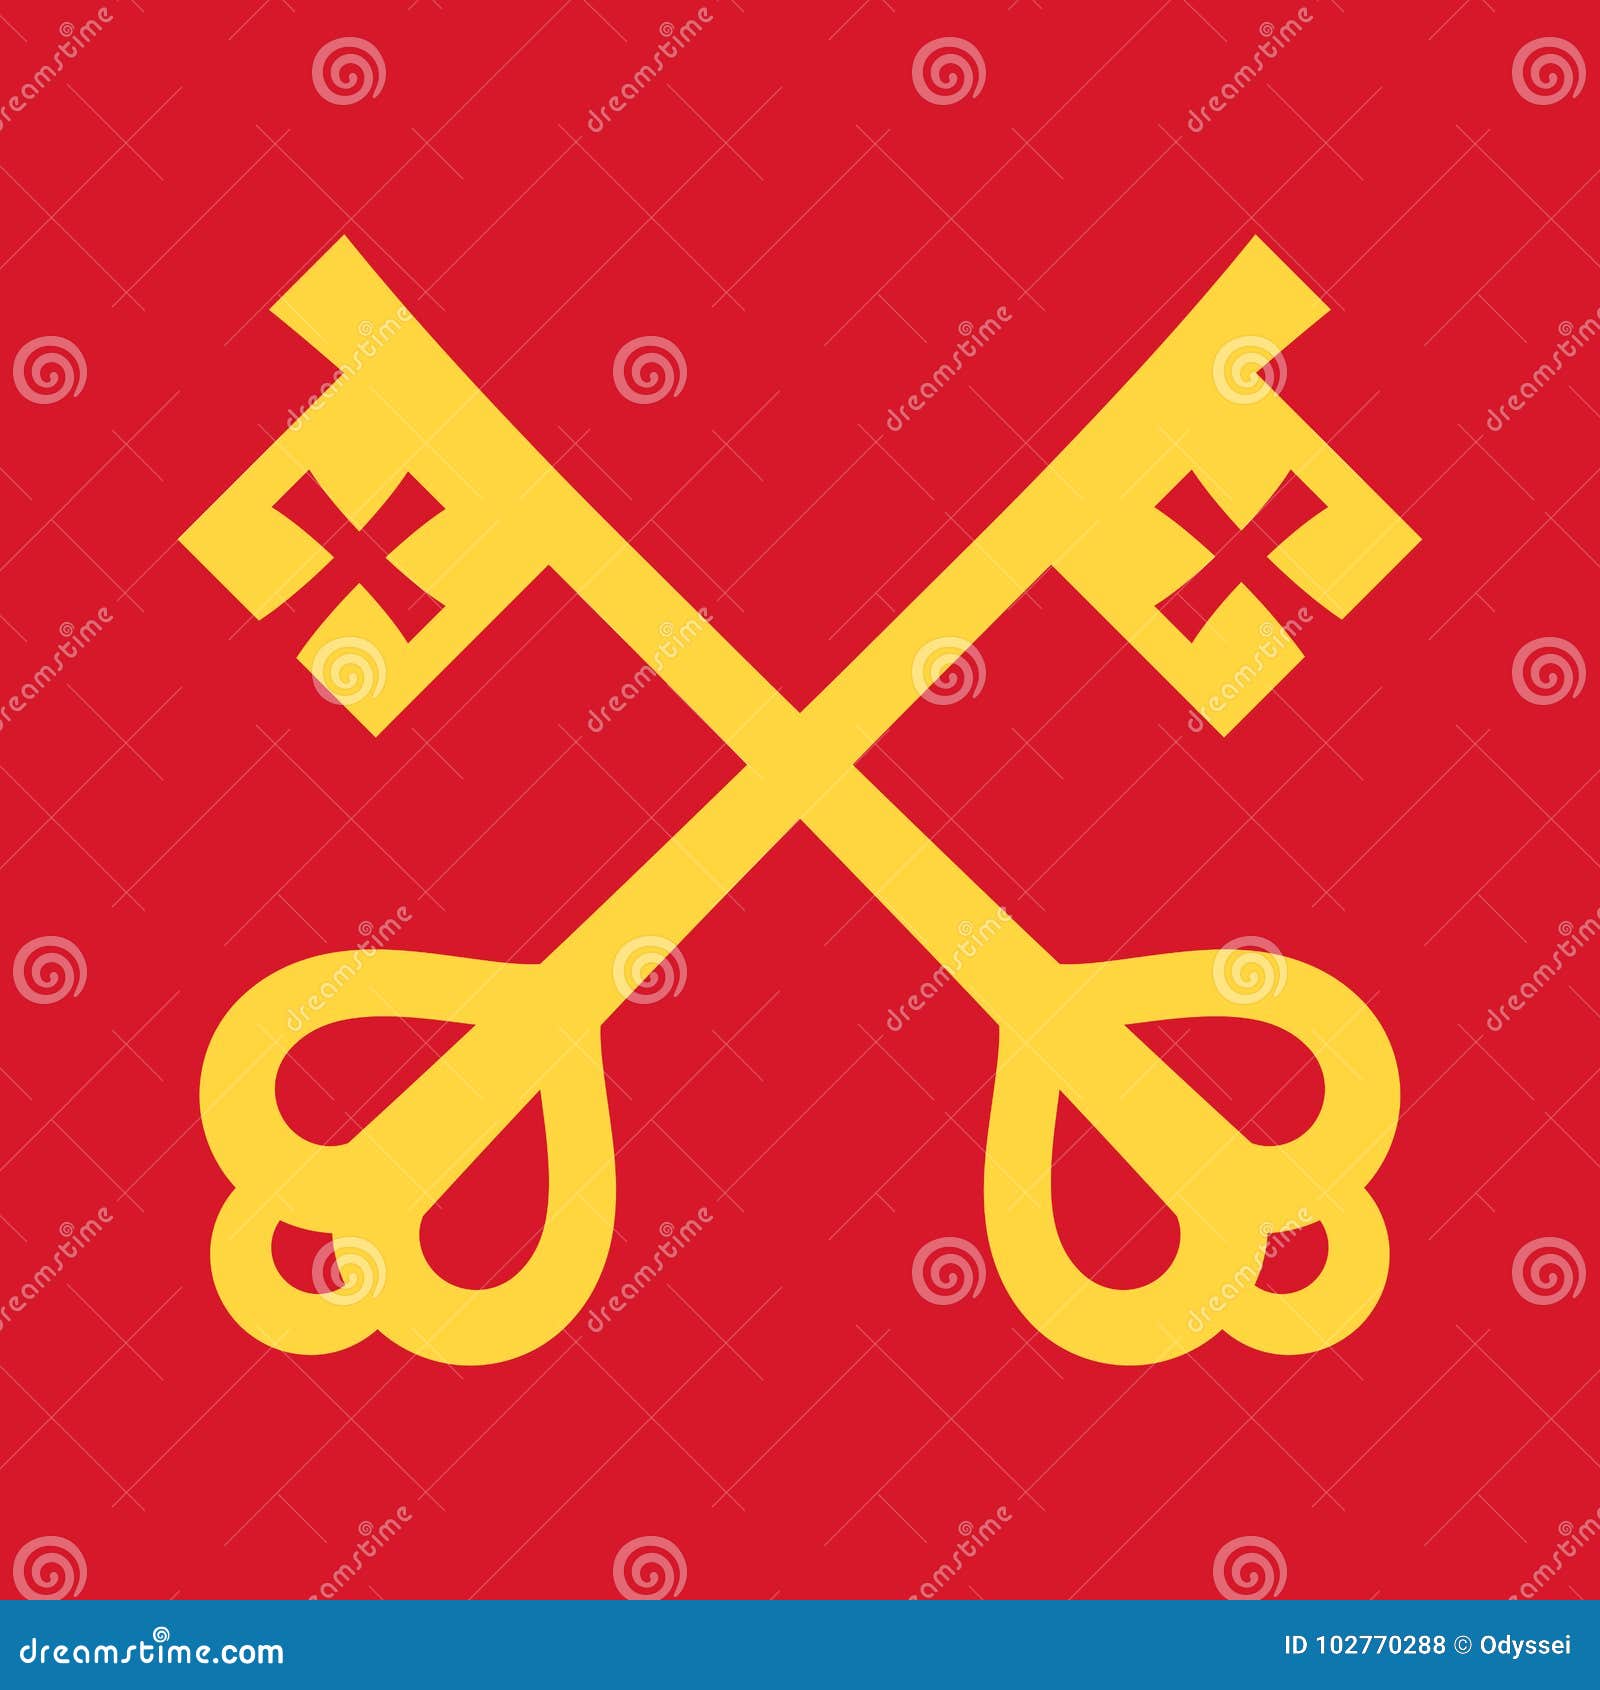 Ключики святого петра. Католический символ веры. Символ католицизма. Ключи Святого Петра. Католические ключи.